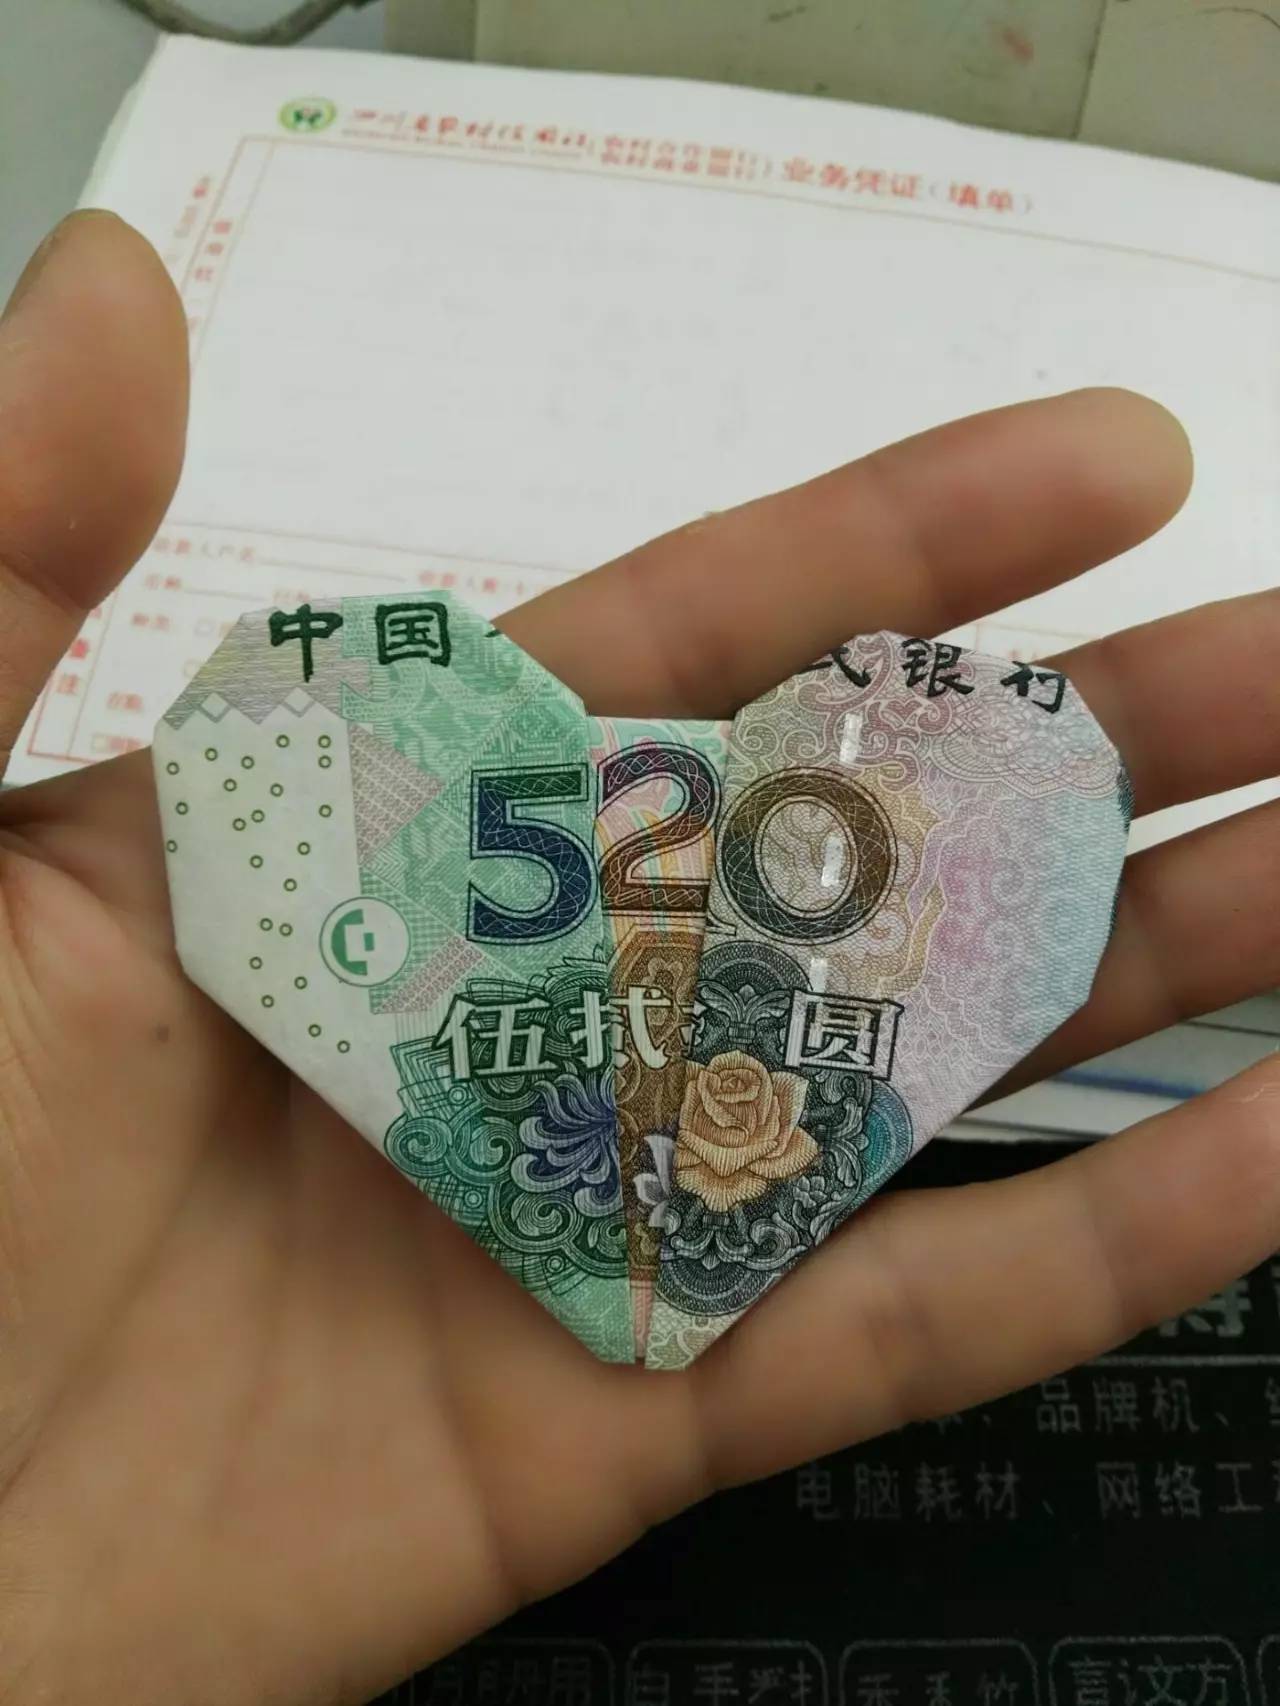 【会长推荐】人民币520心形折纸手工折法教程图解!包教包会!